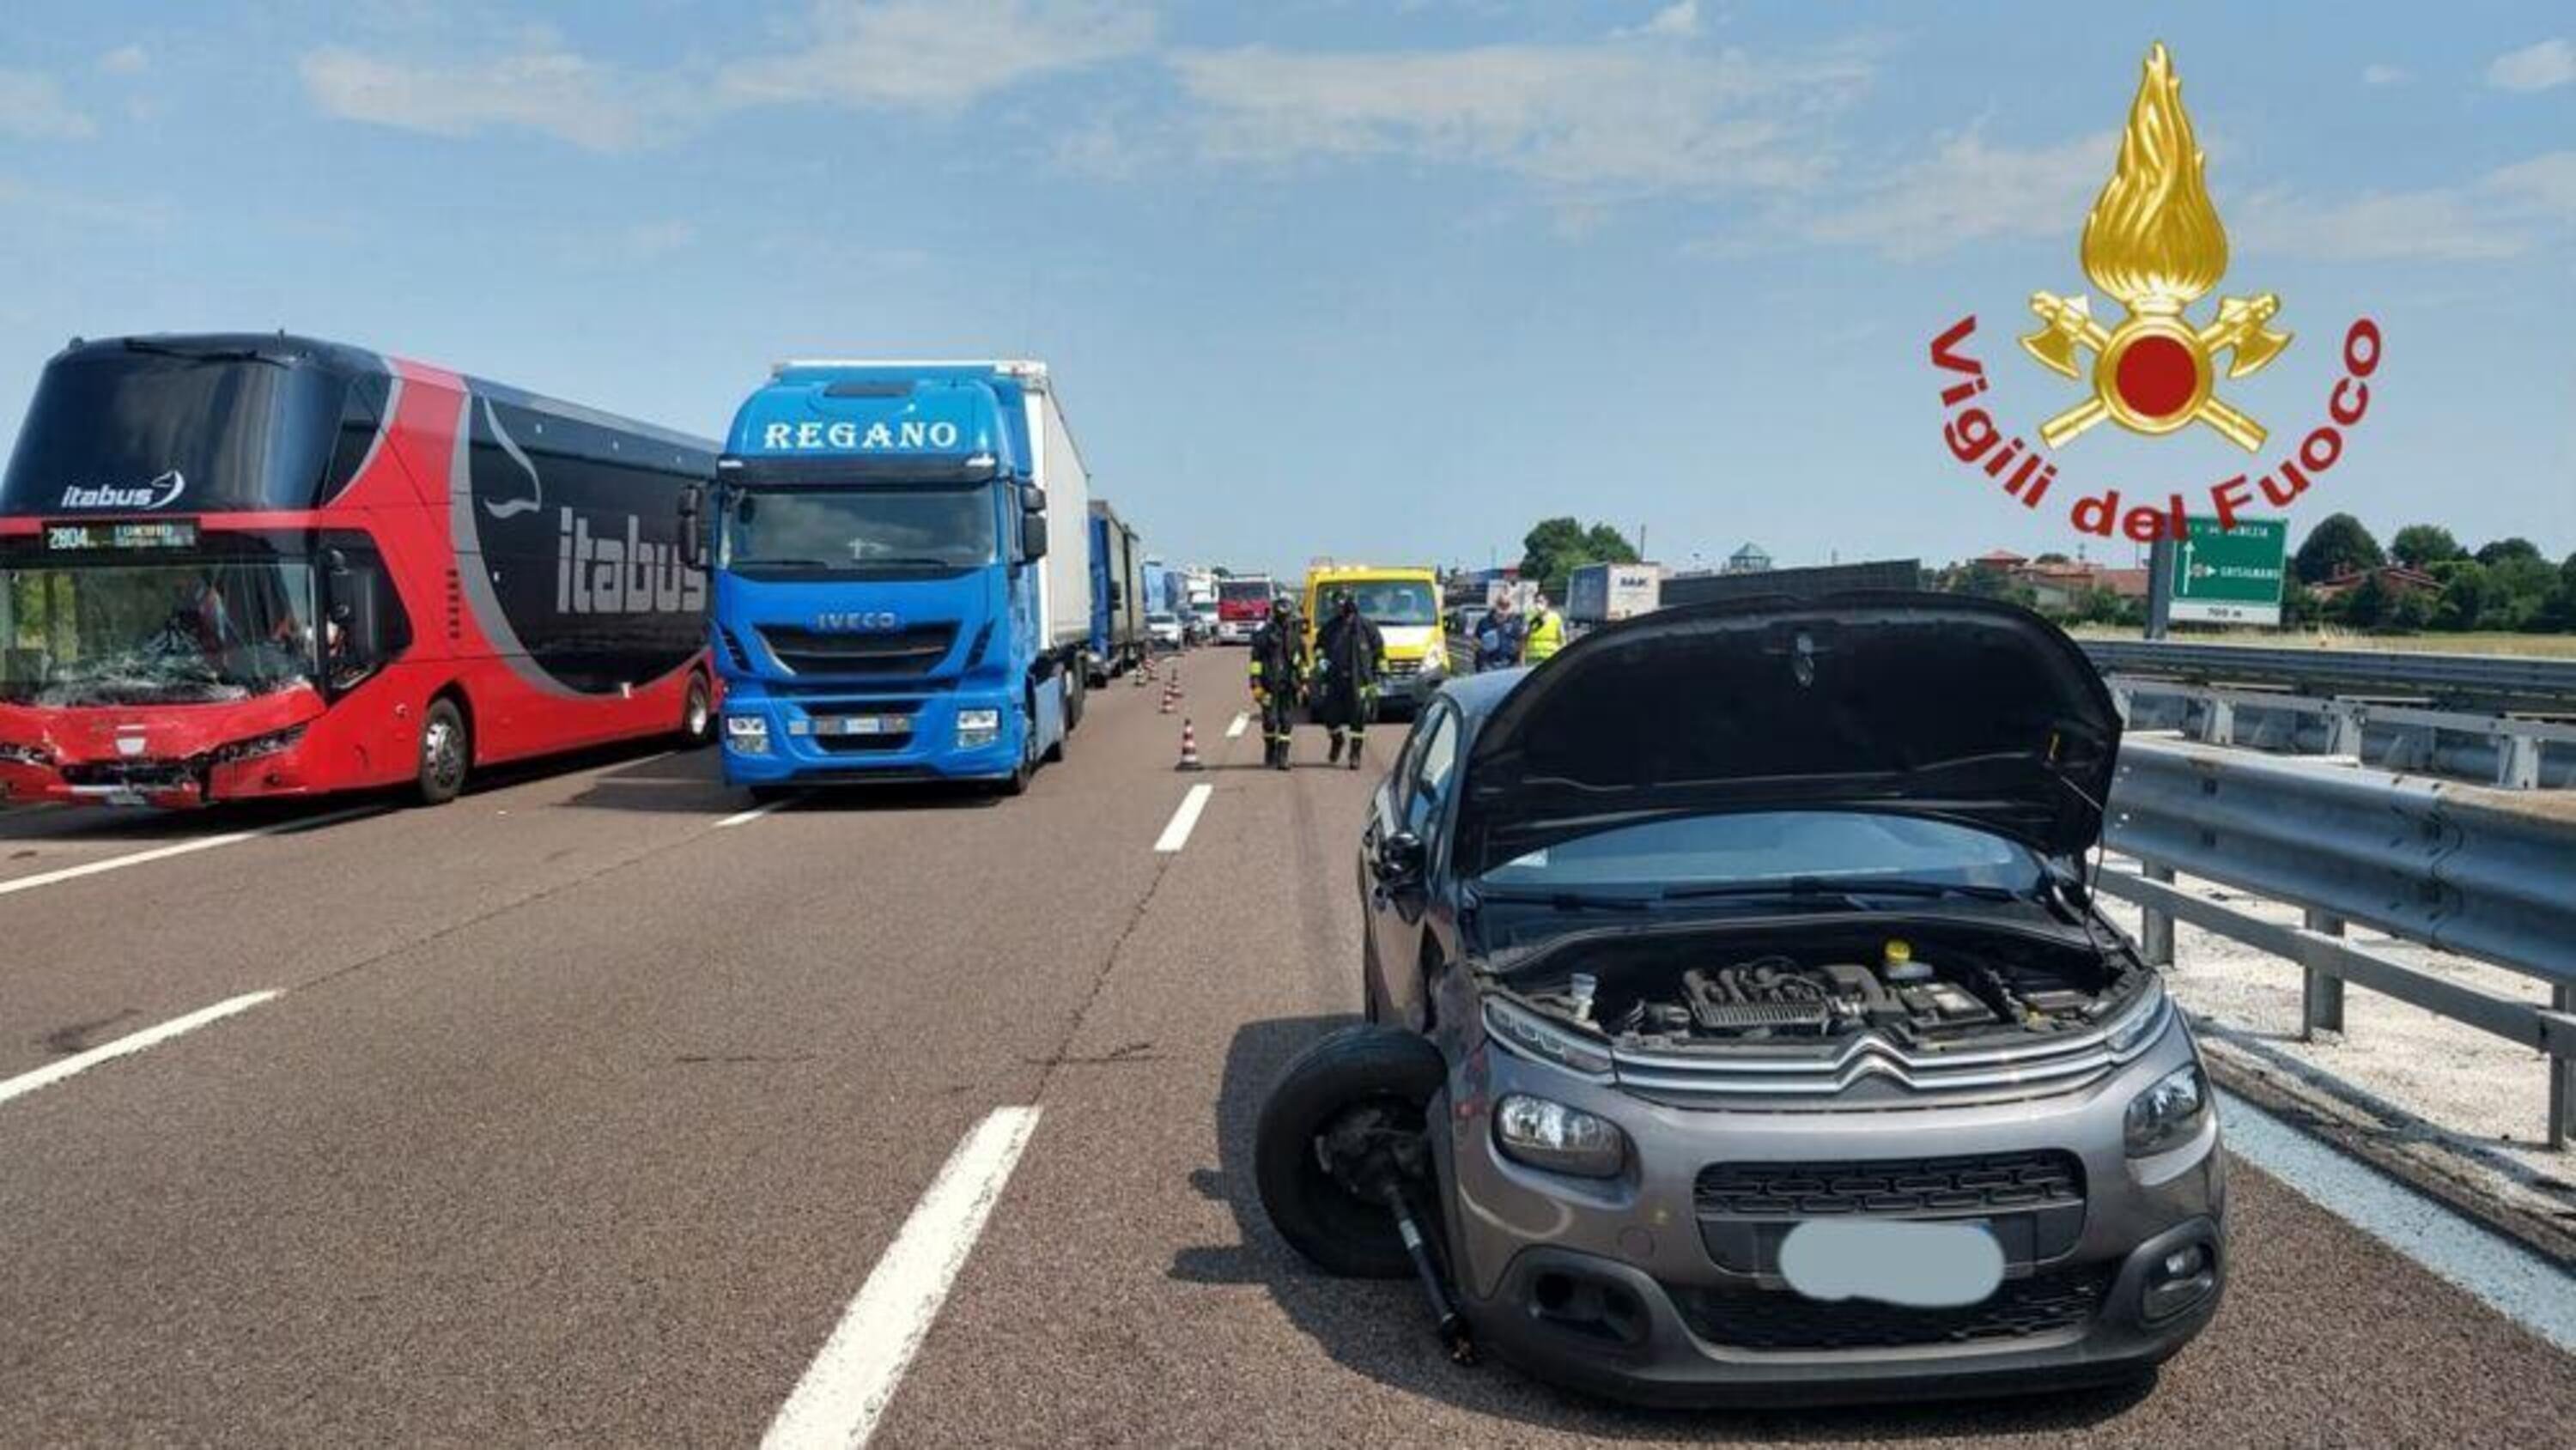 Brutto incidente in autostrada A4, Pullman Itabus e camion coinvolti insieme a 2 auto